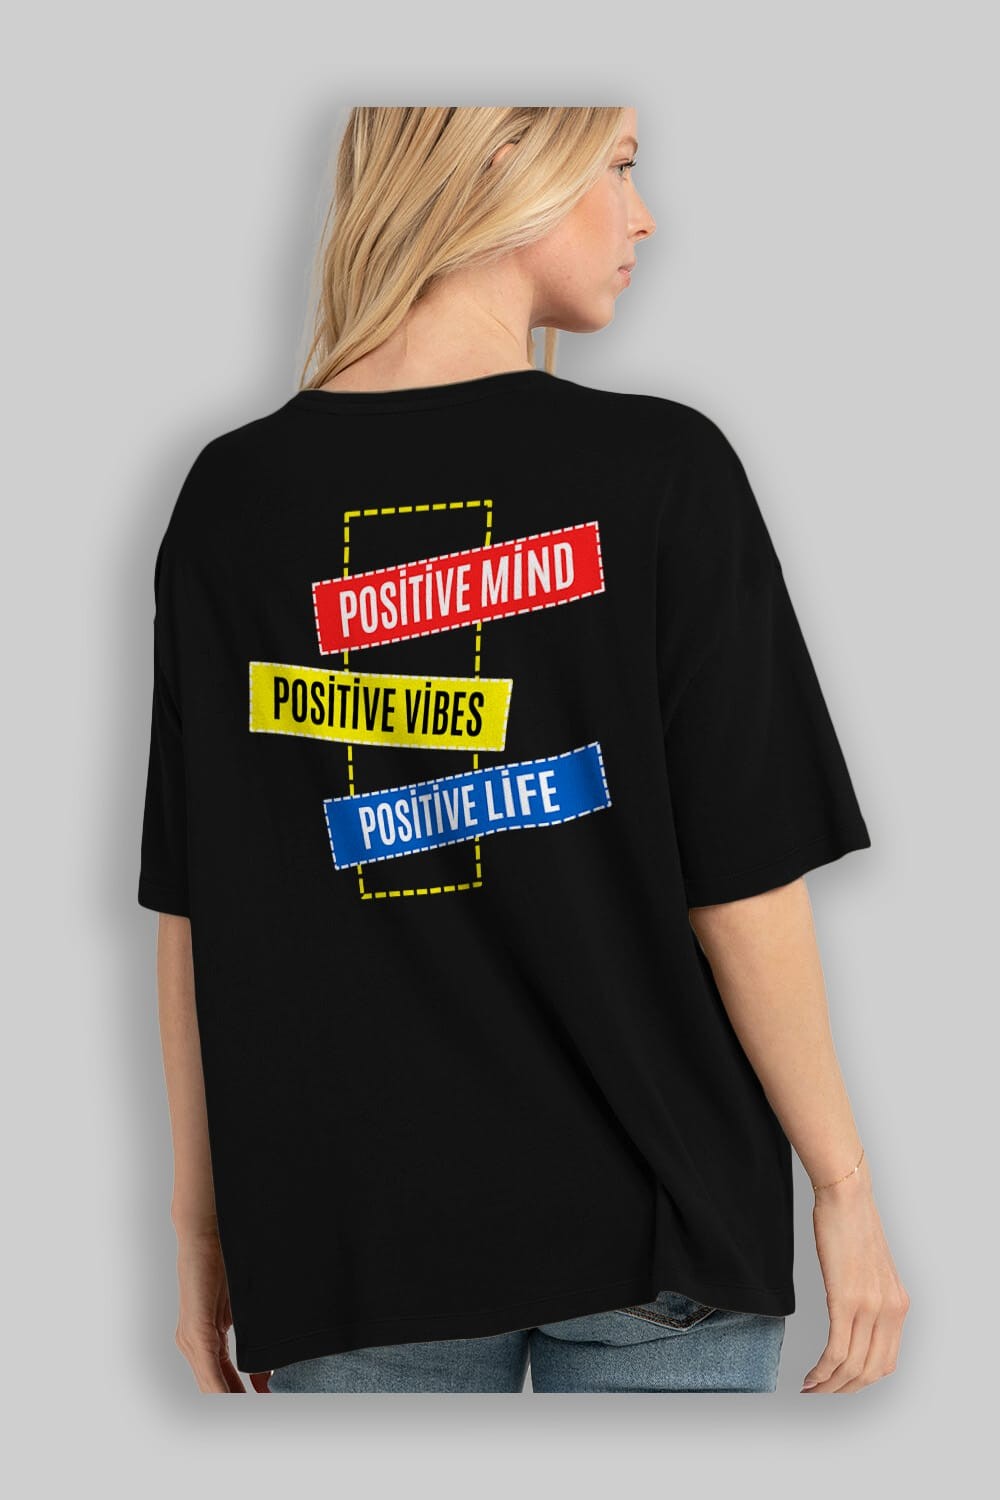 Positive Mind Vibes Lifes Arka Baskılı Oversize t-shirt Erkek Kadın Unisex